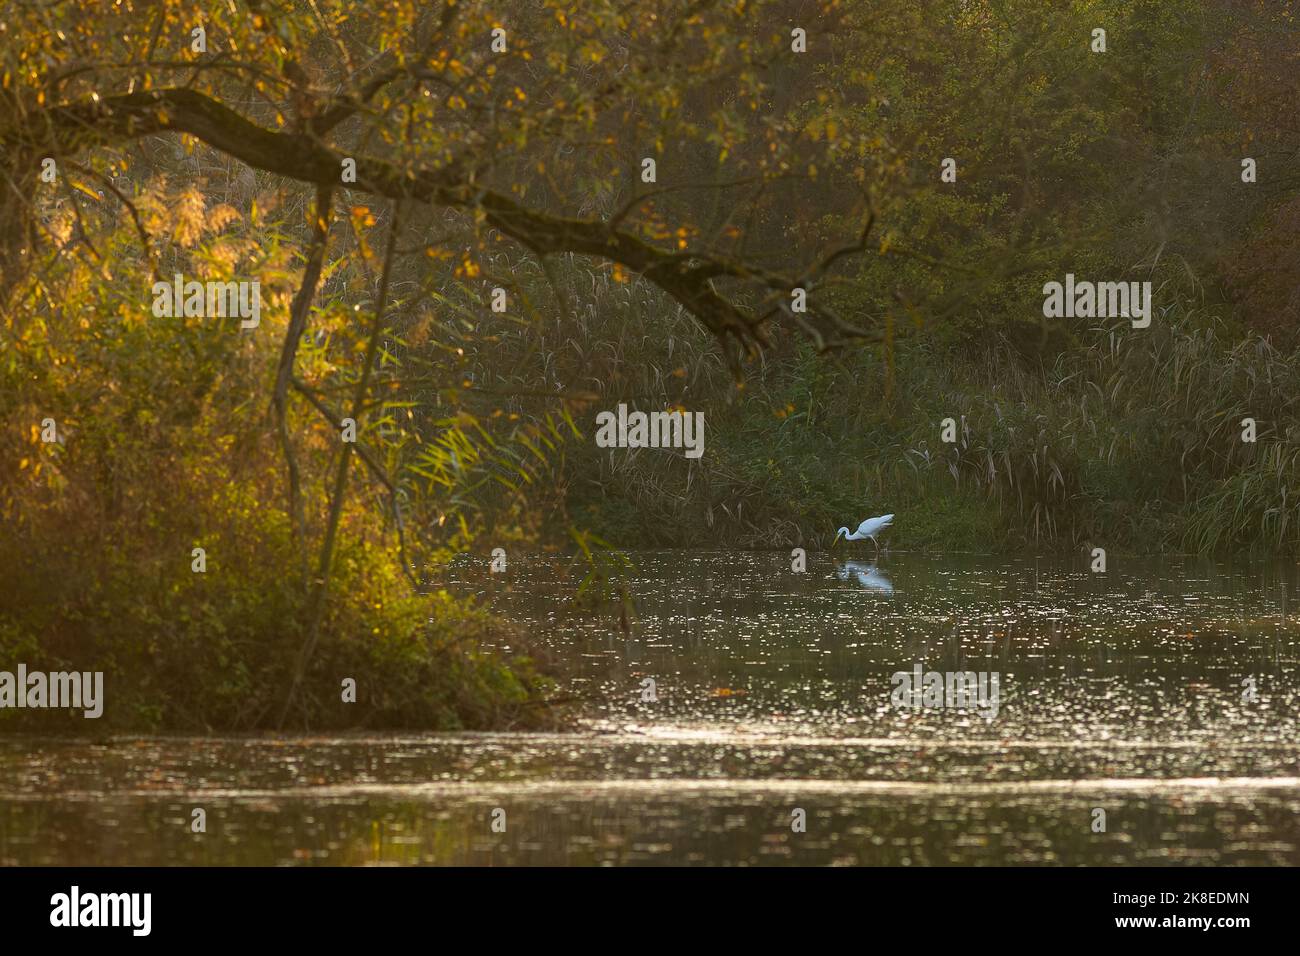 La gran pesca de garceta blanca en una cala poco profunda. Tarde de otoño en el lago con cañas y árboles con hojas amarillas y verdes. Atmósfera oscura. Foto de stock